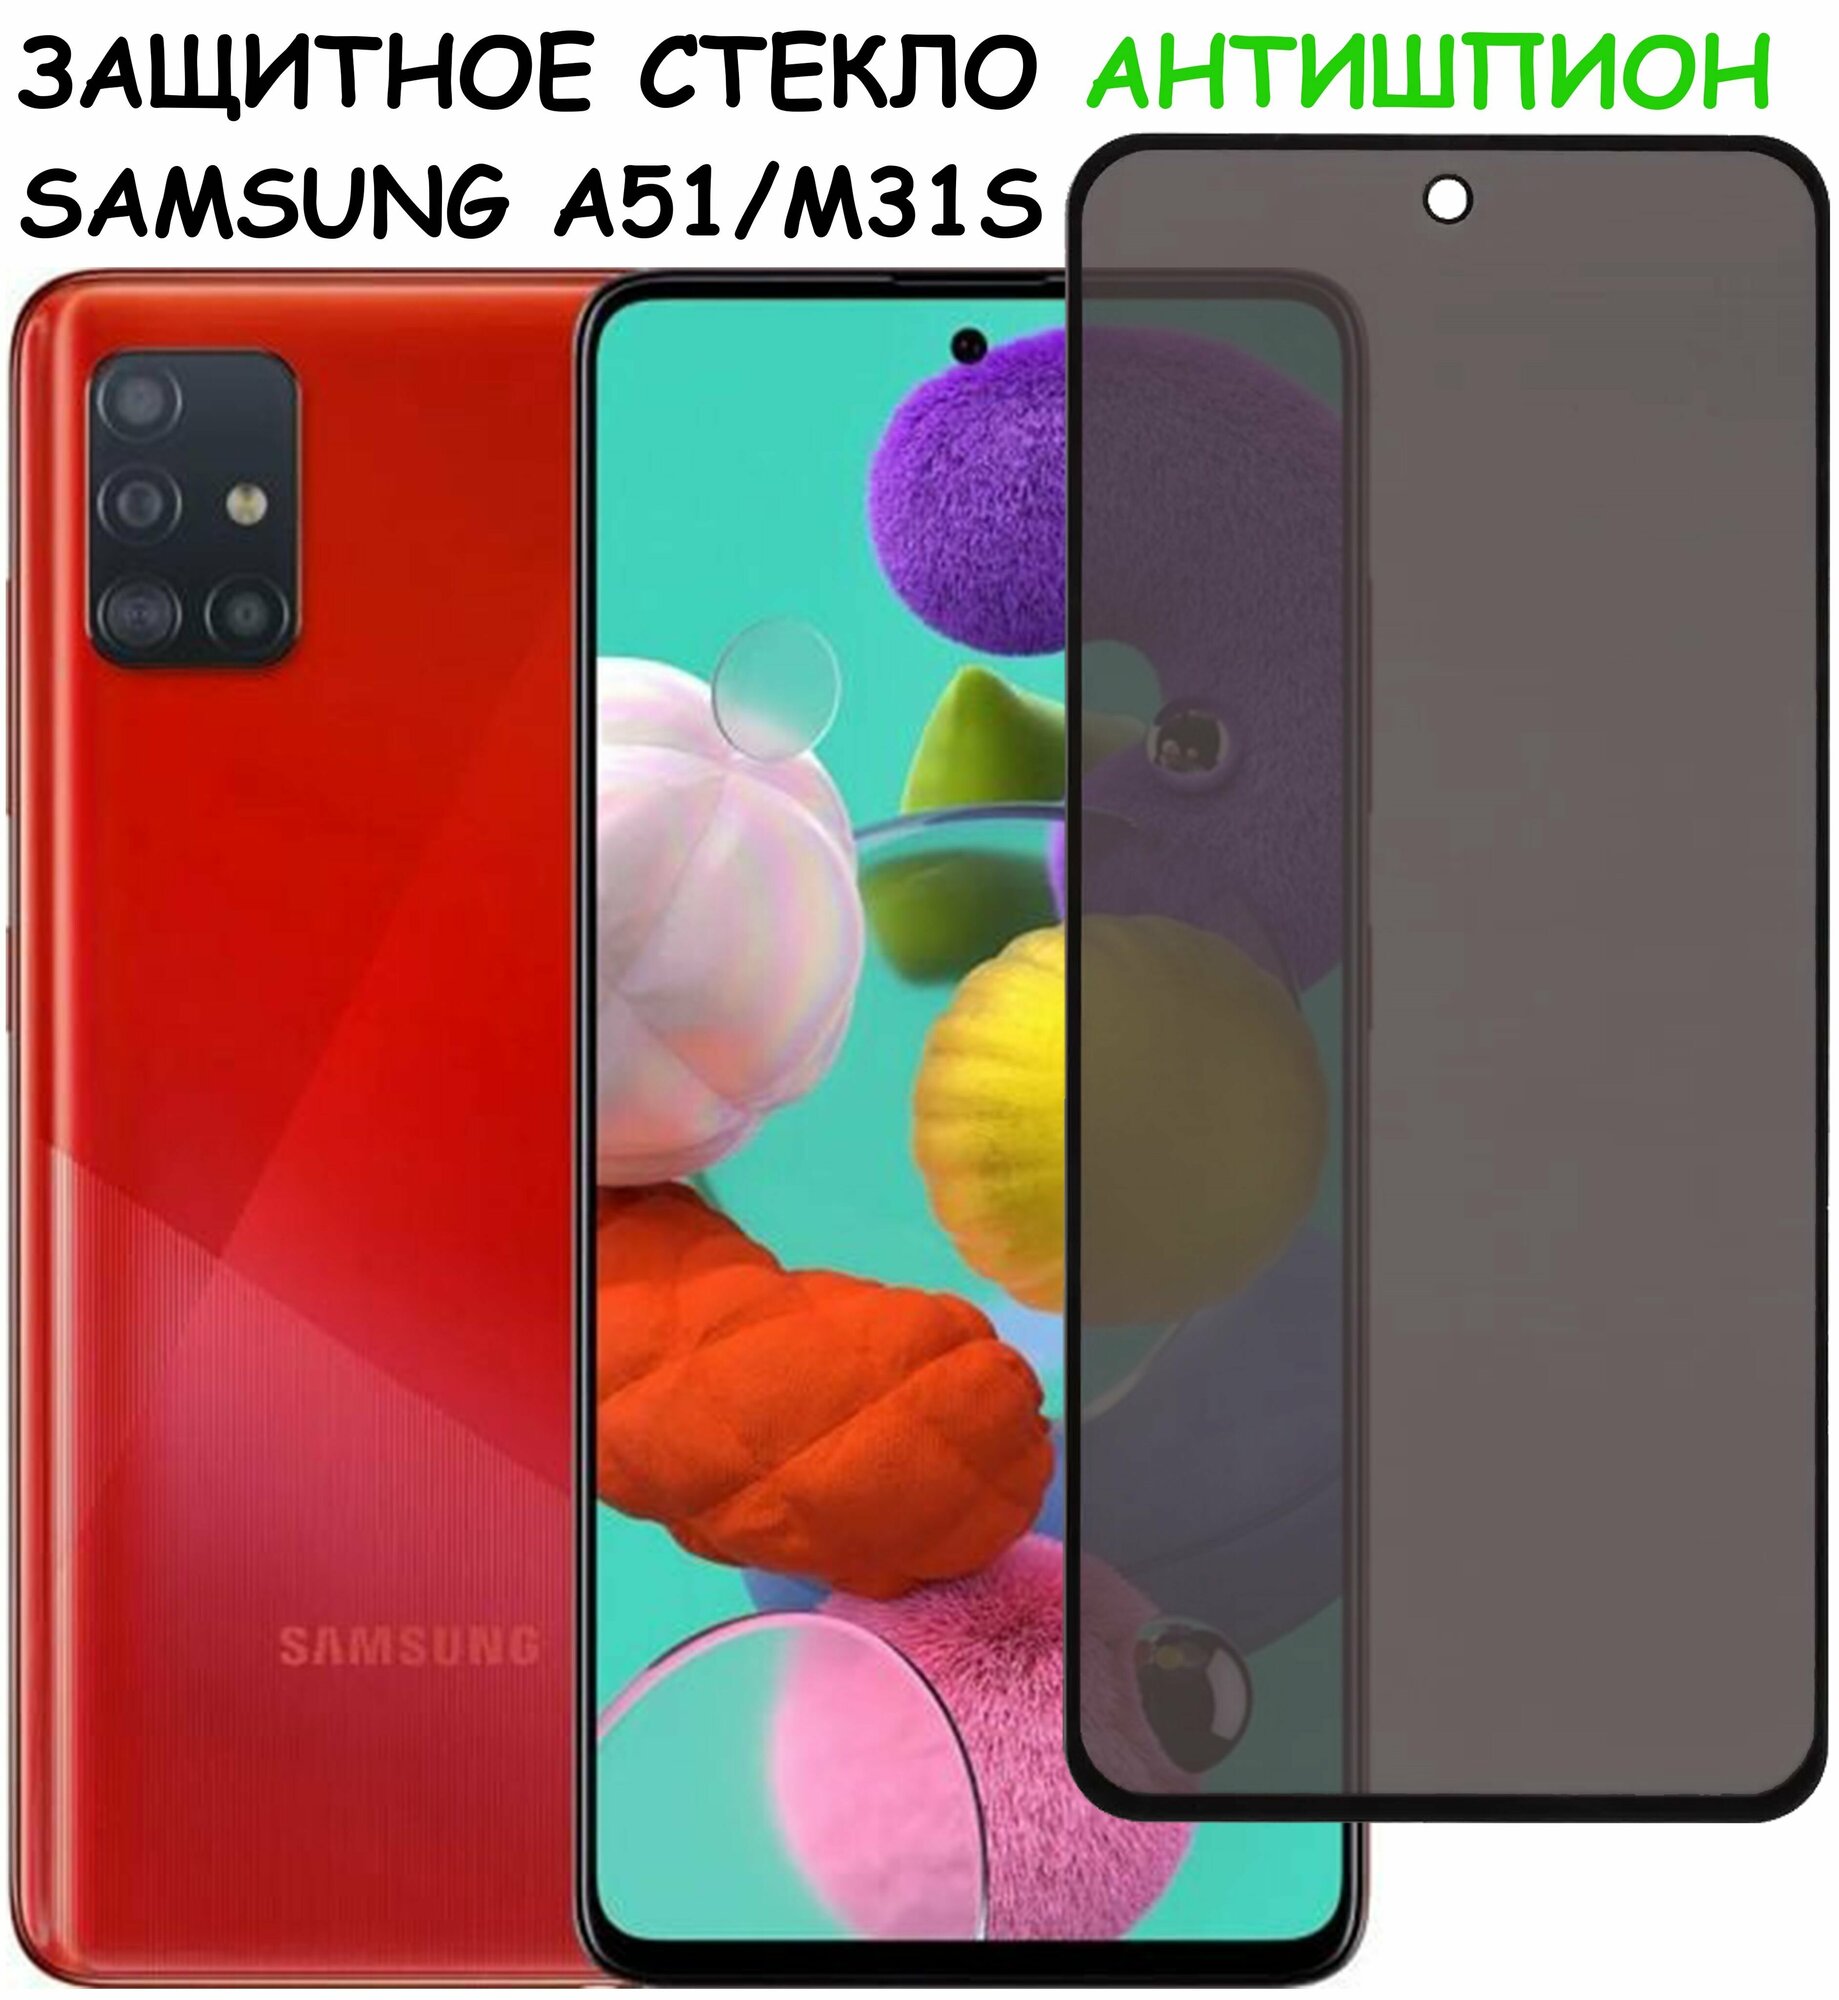 Защитное стекло "Антишпион" для Samsung Galaxy A51/M31s (A515F/M317F) / самсунг а51 / М31С Черное (Закалённое, полное покрытие)